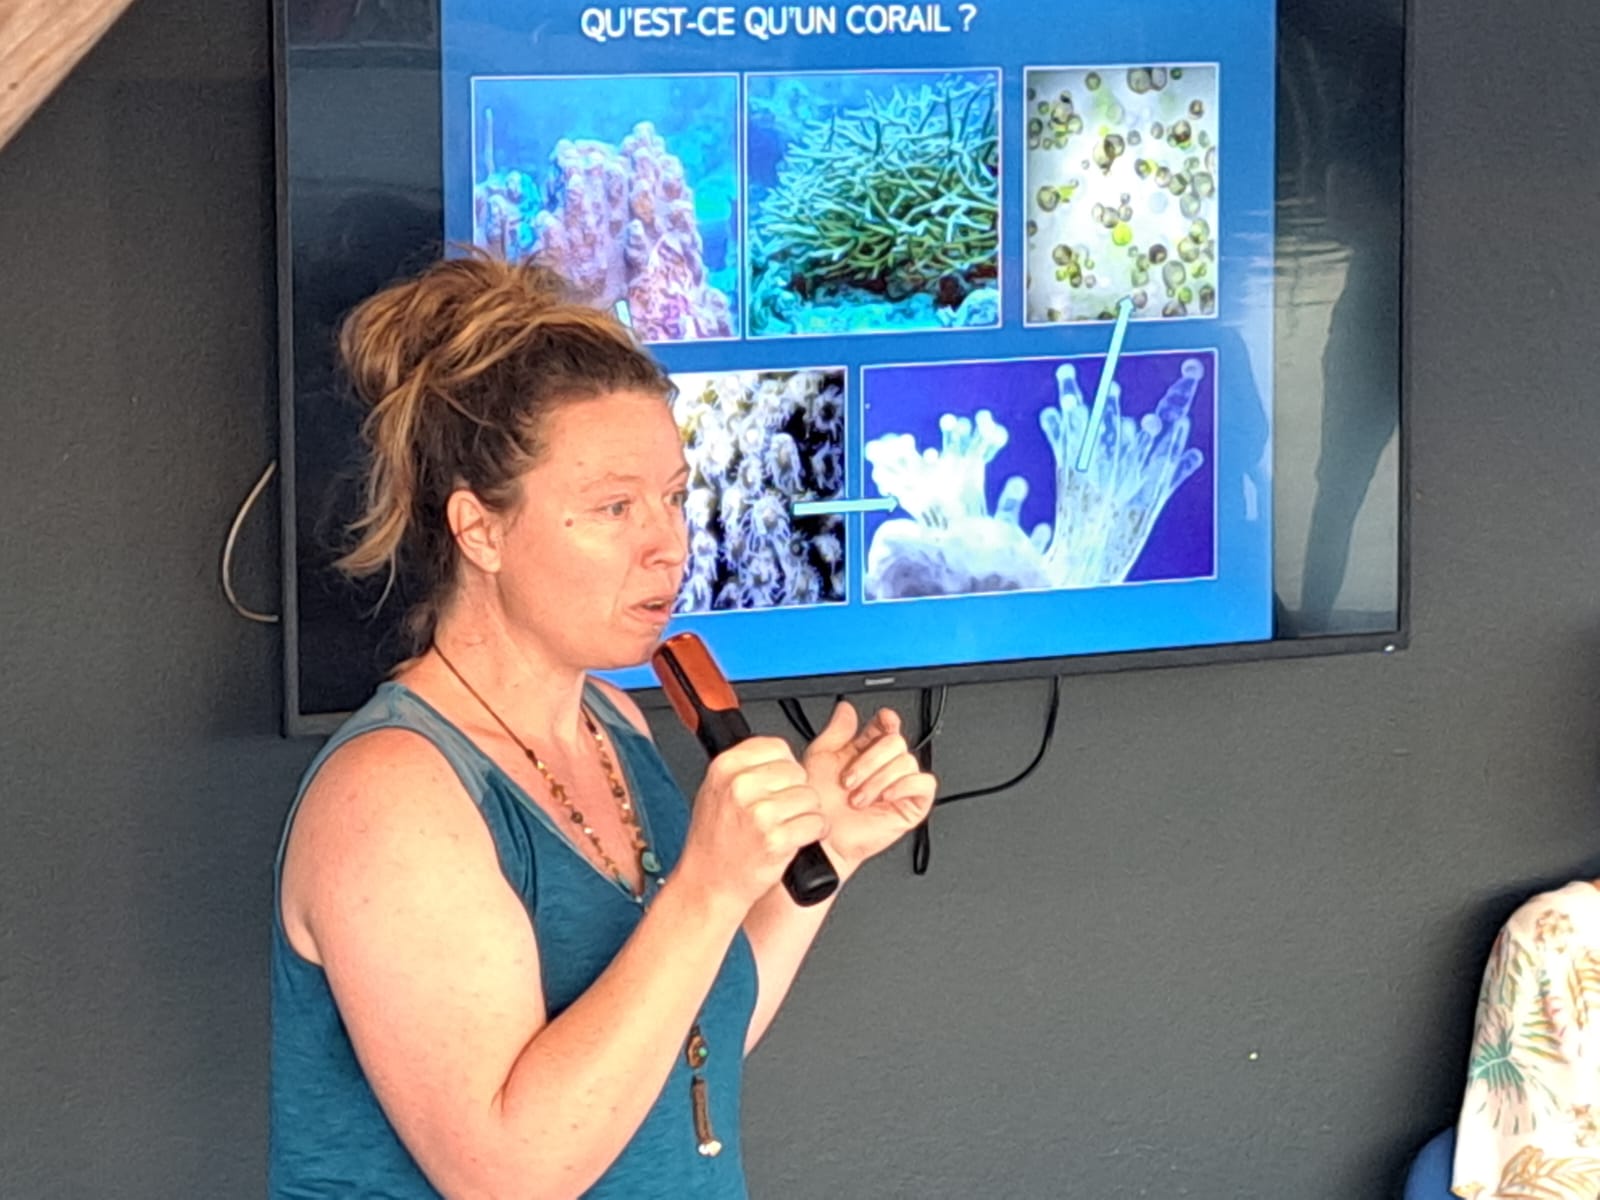     Les écosystèmes marins en Guadeloupe : 12 conférences pour en parler

